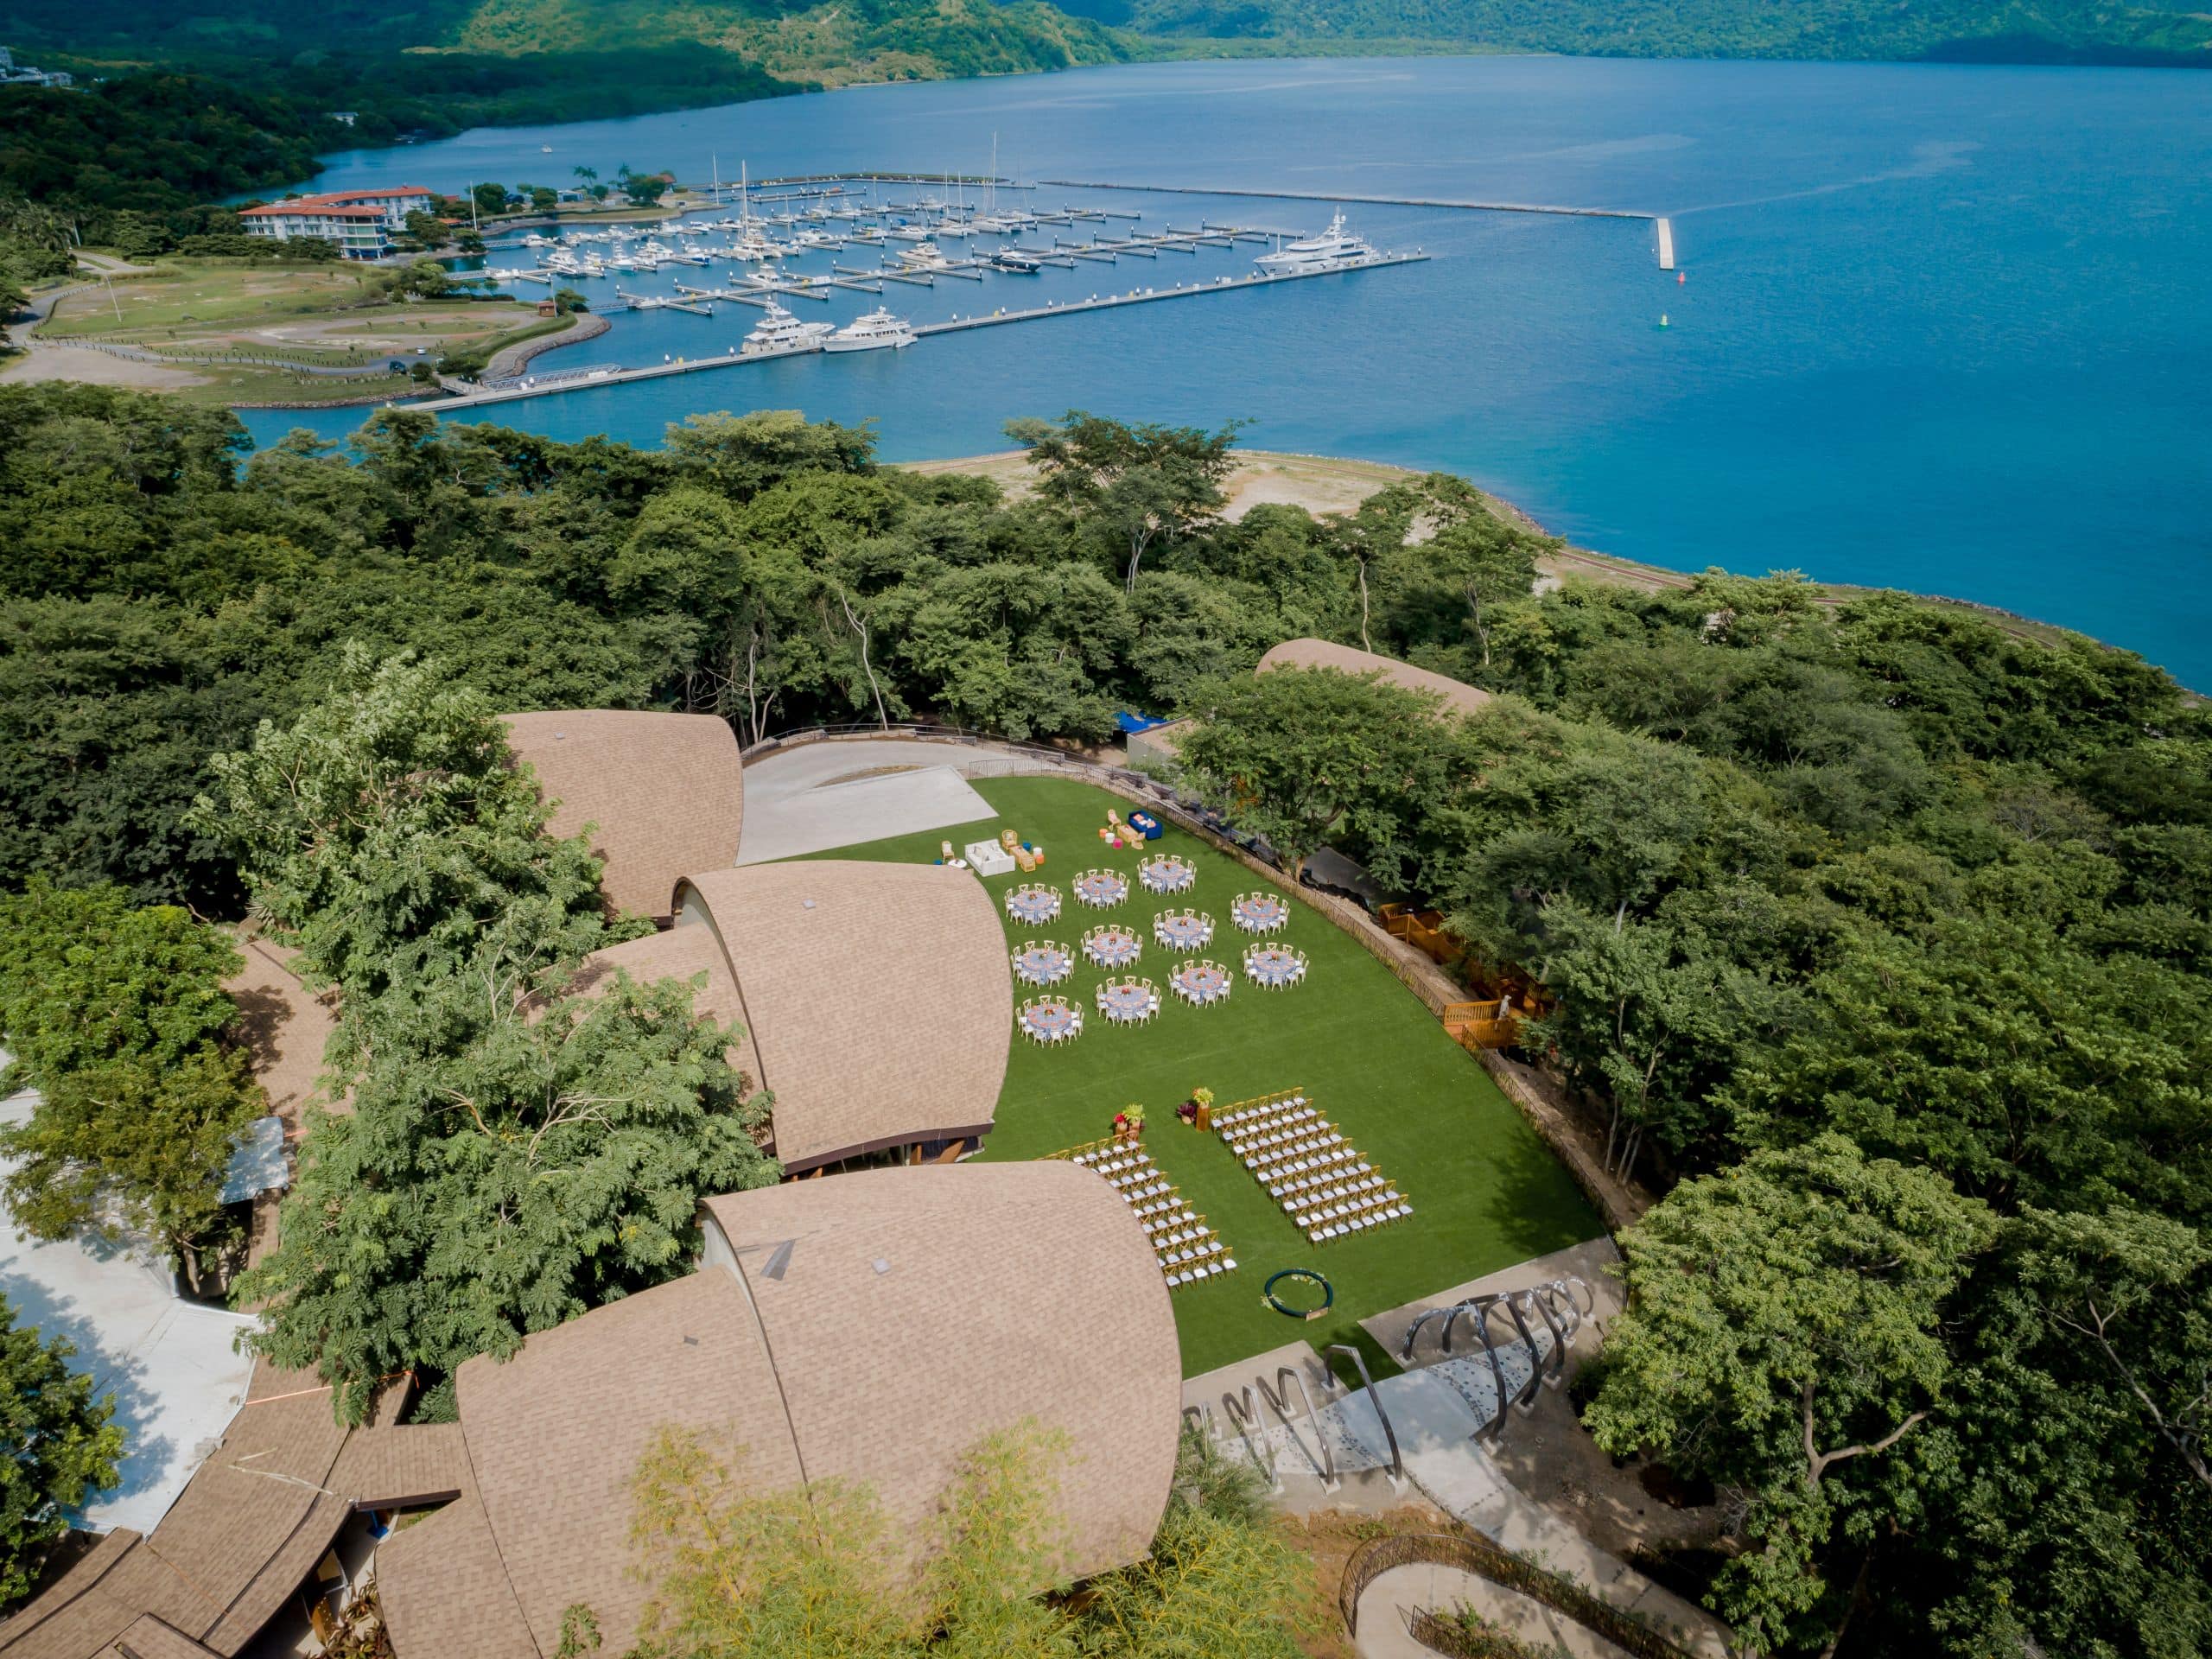 Andaz Costa Rica Resort at Peninsula Papagayo Aerial Overlooking Marina